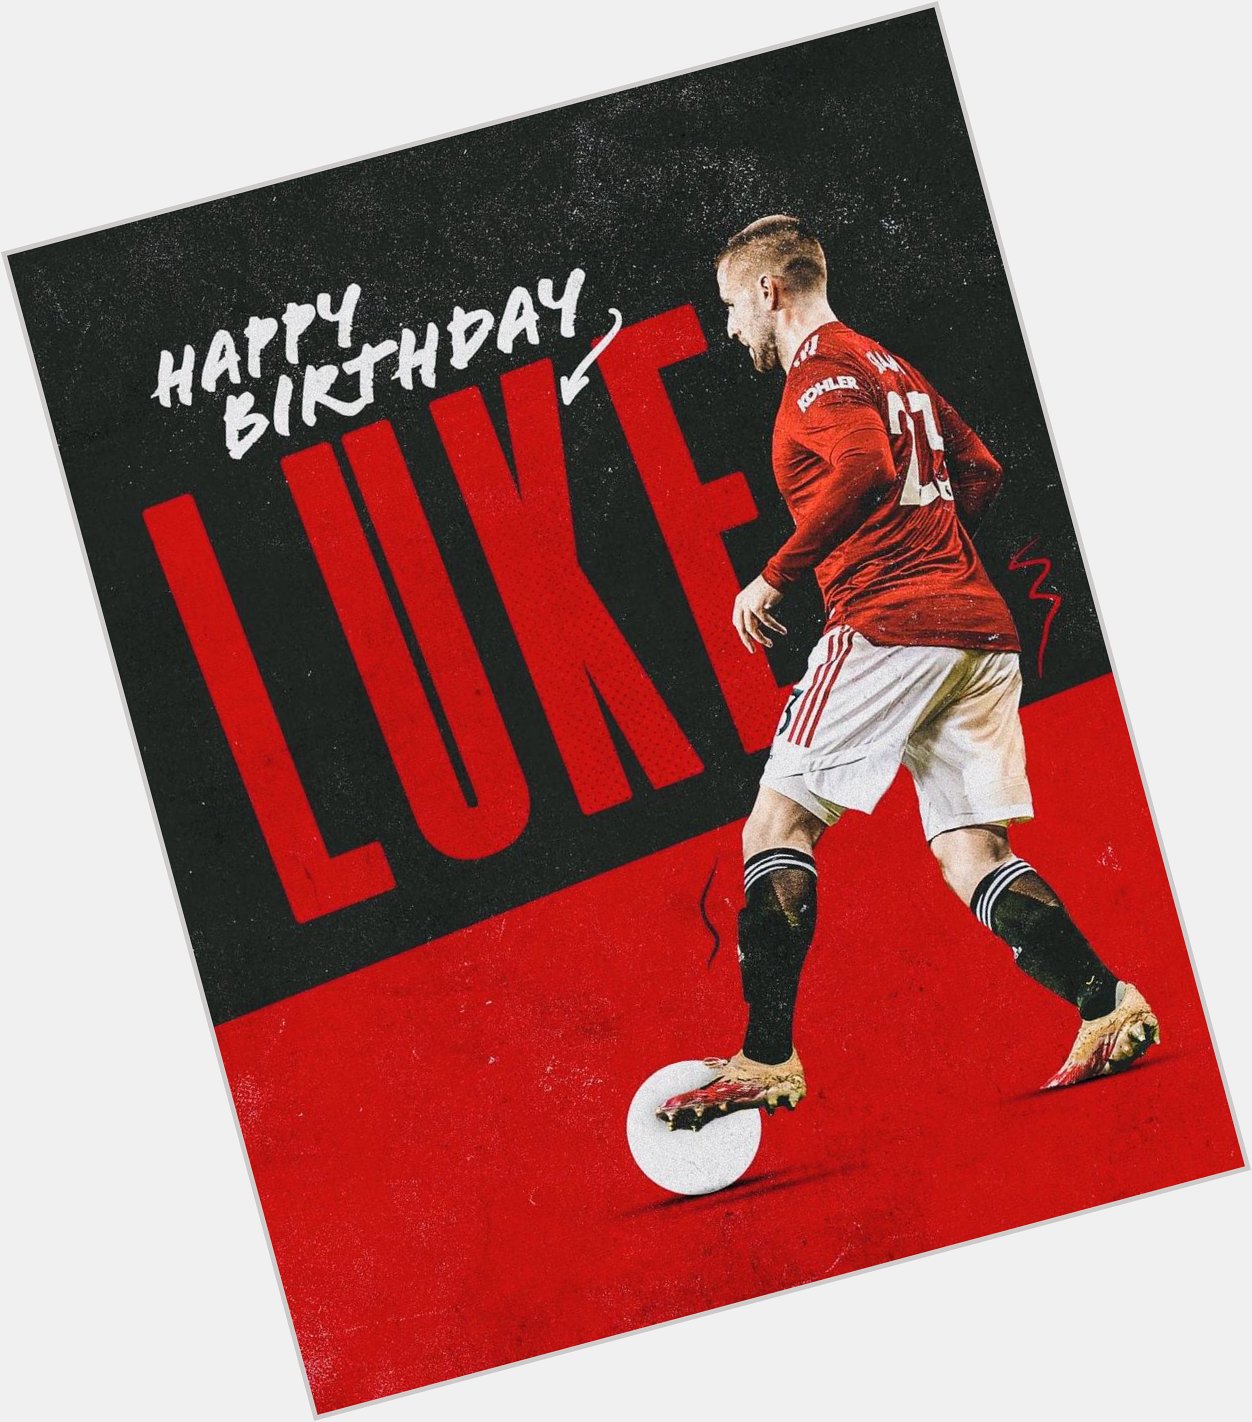 Manchester United !!
Happy birthday, Luke Shaw   